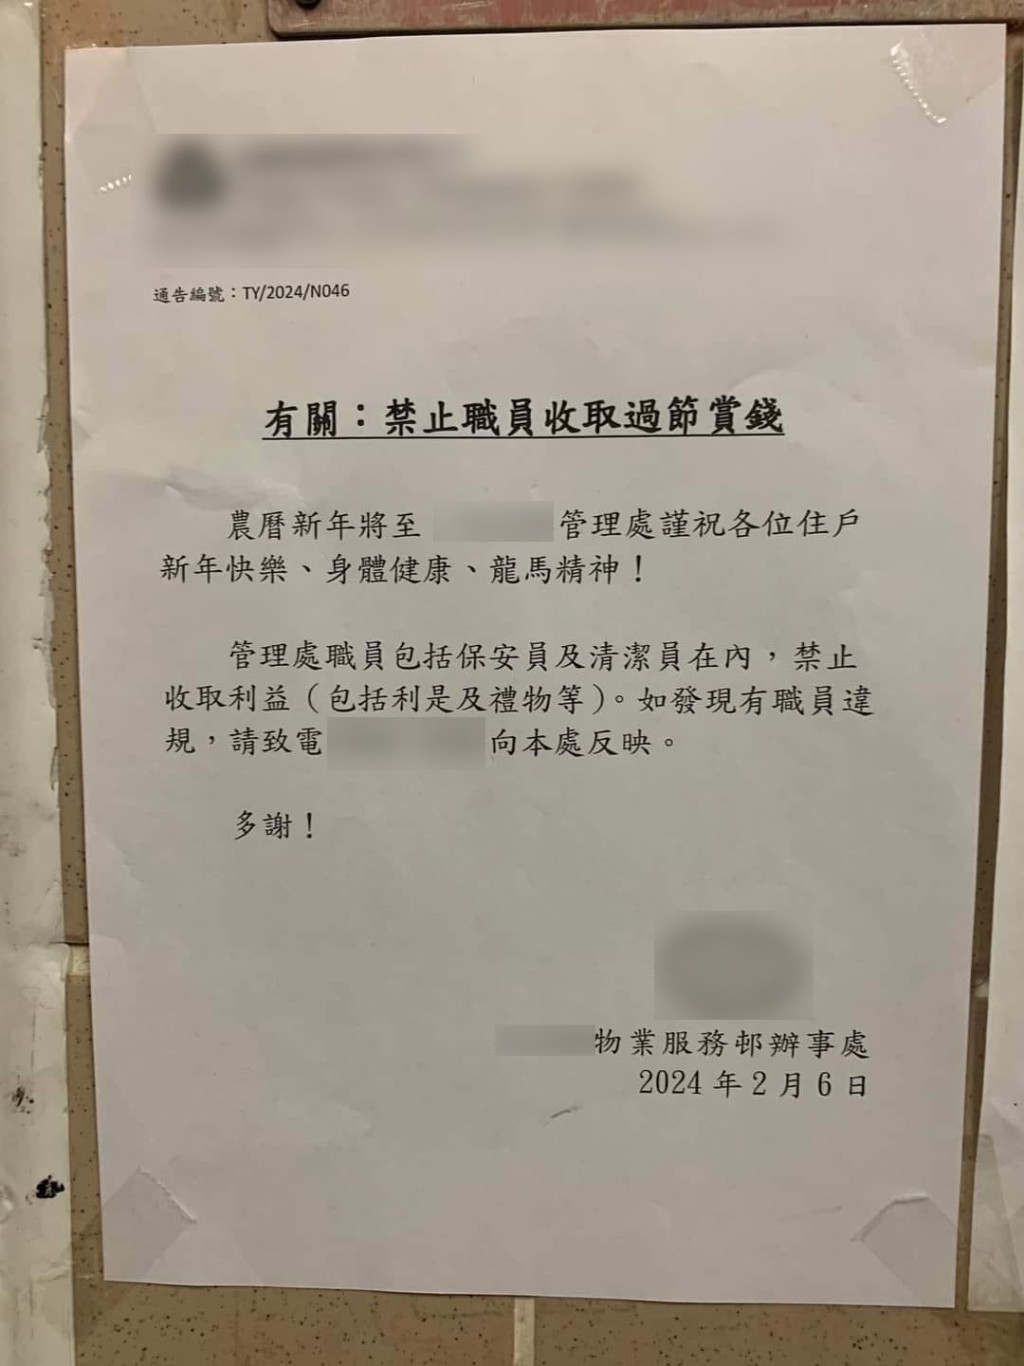 一间物管公司发通告禁止保安及清洁工收取利是及礼物。香港突发事故报料区截图